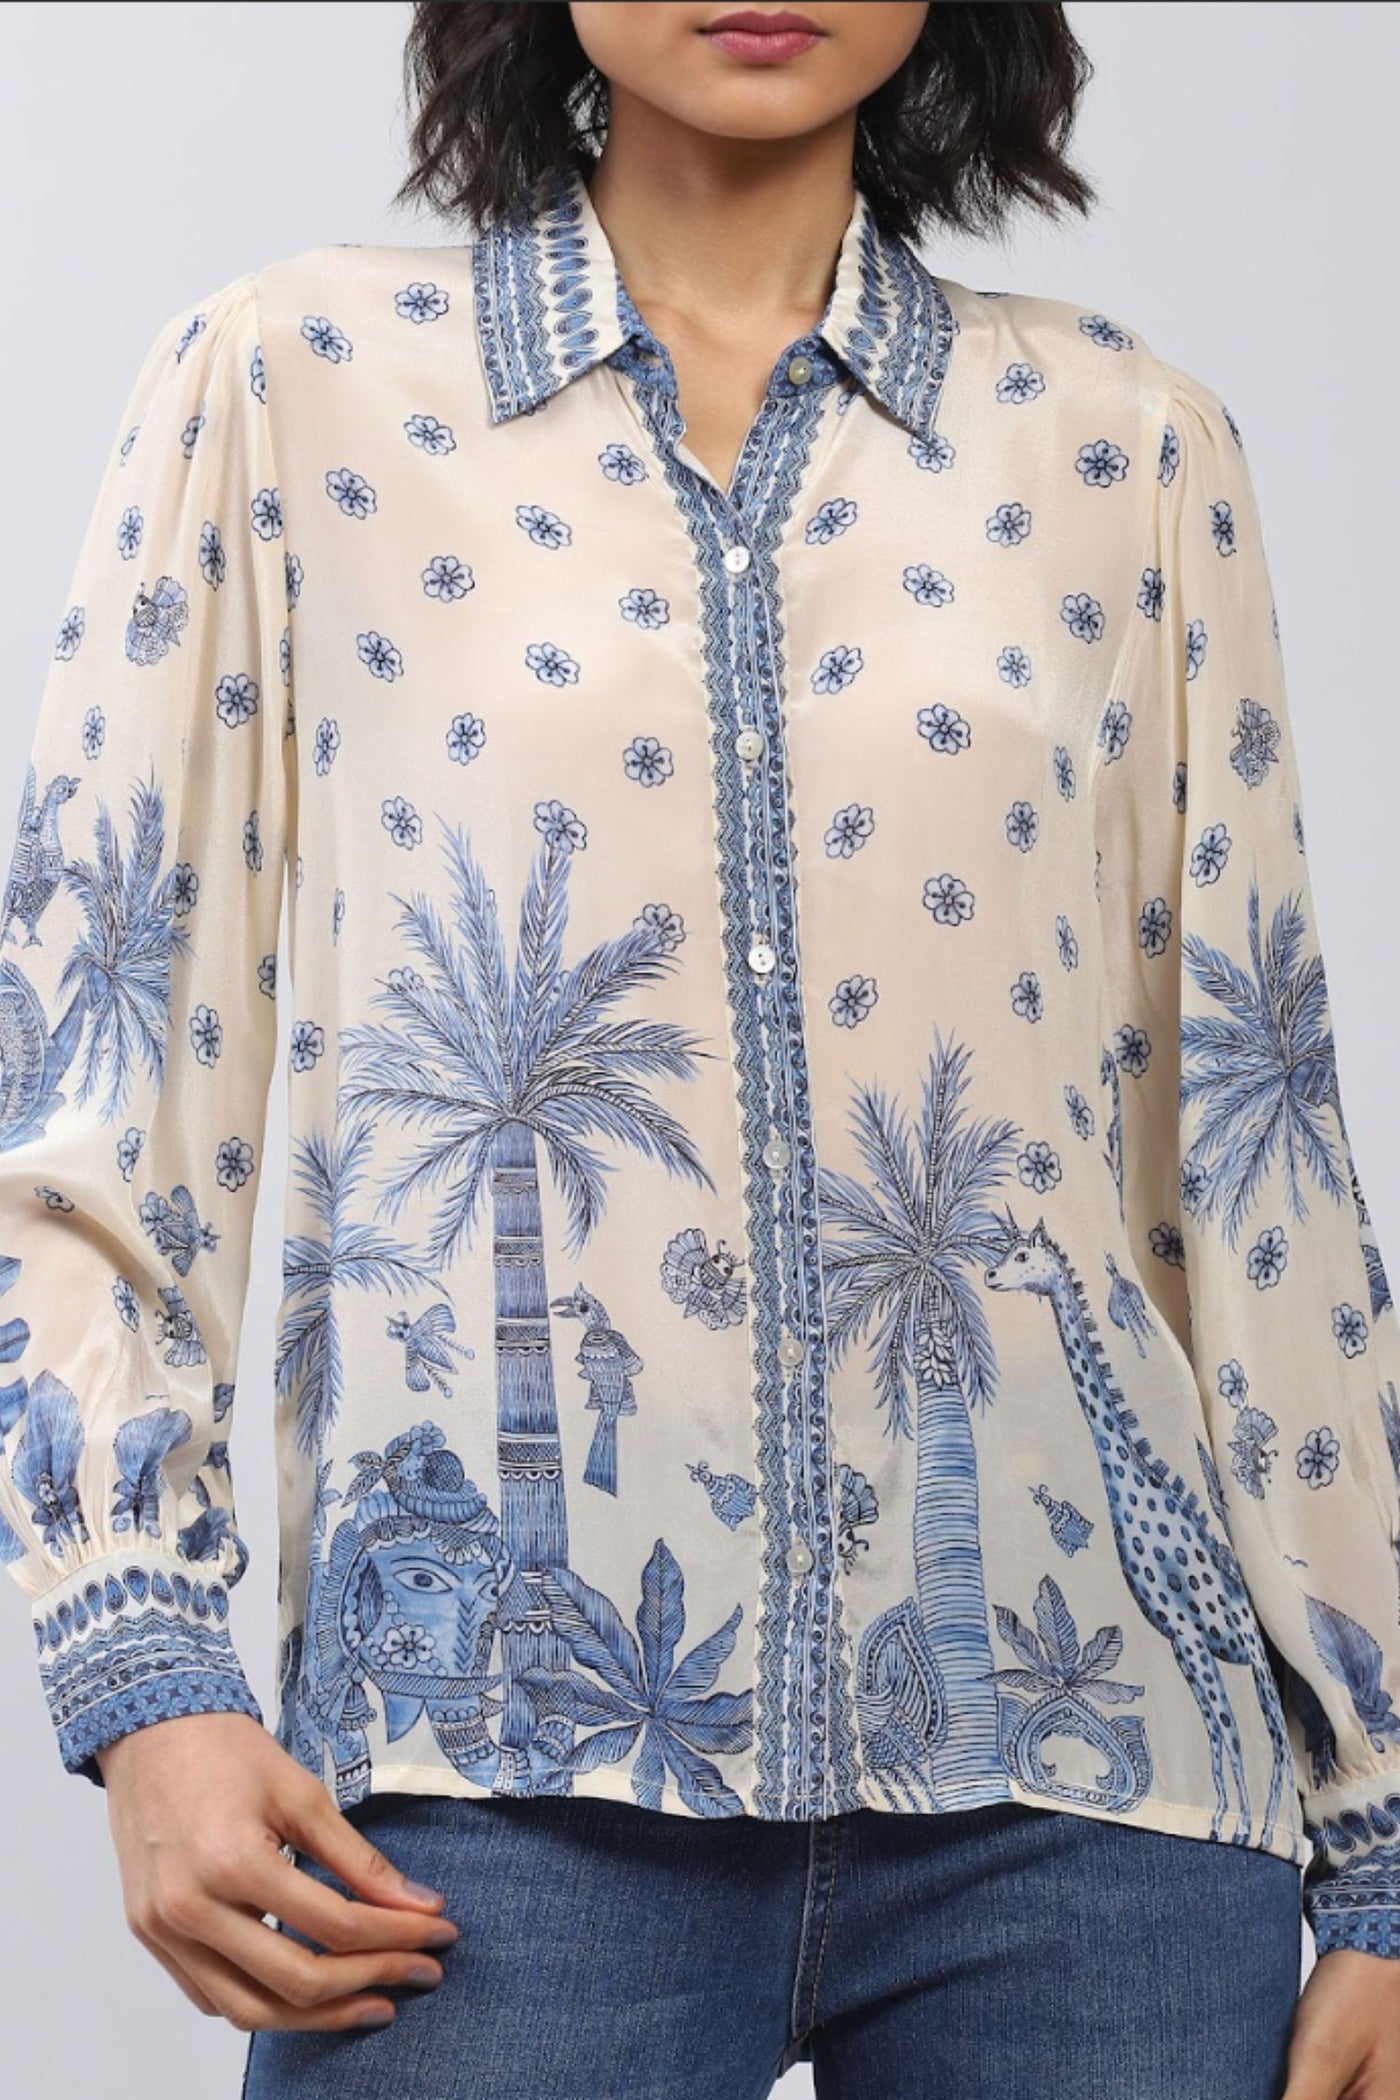 Label Ritu Kumar Collar Neck Full Sleeves Printed Shirt Indian designer wear online shopping melange singapore